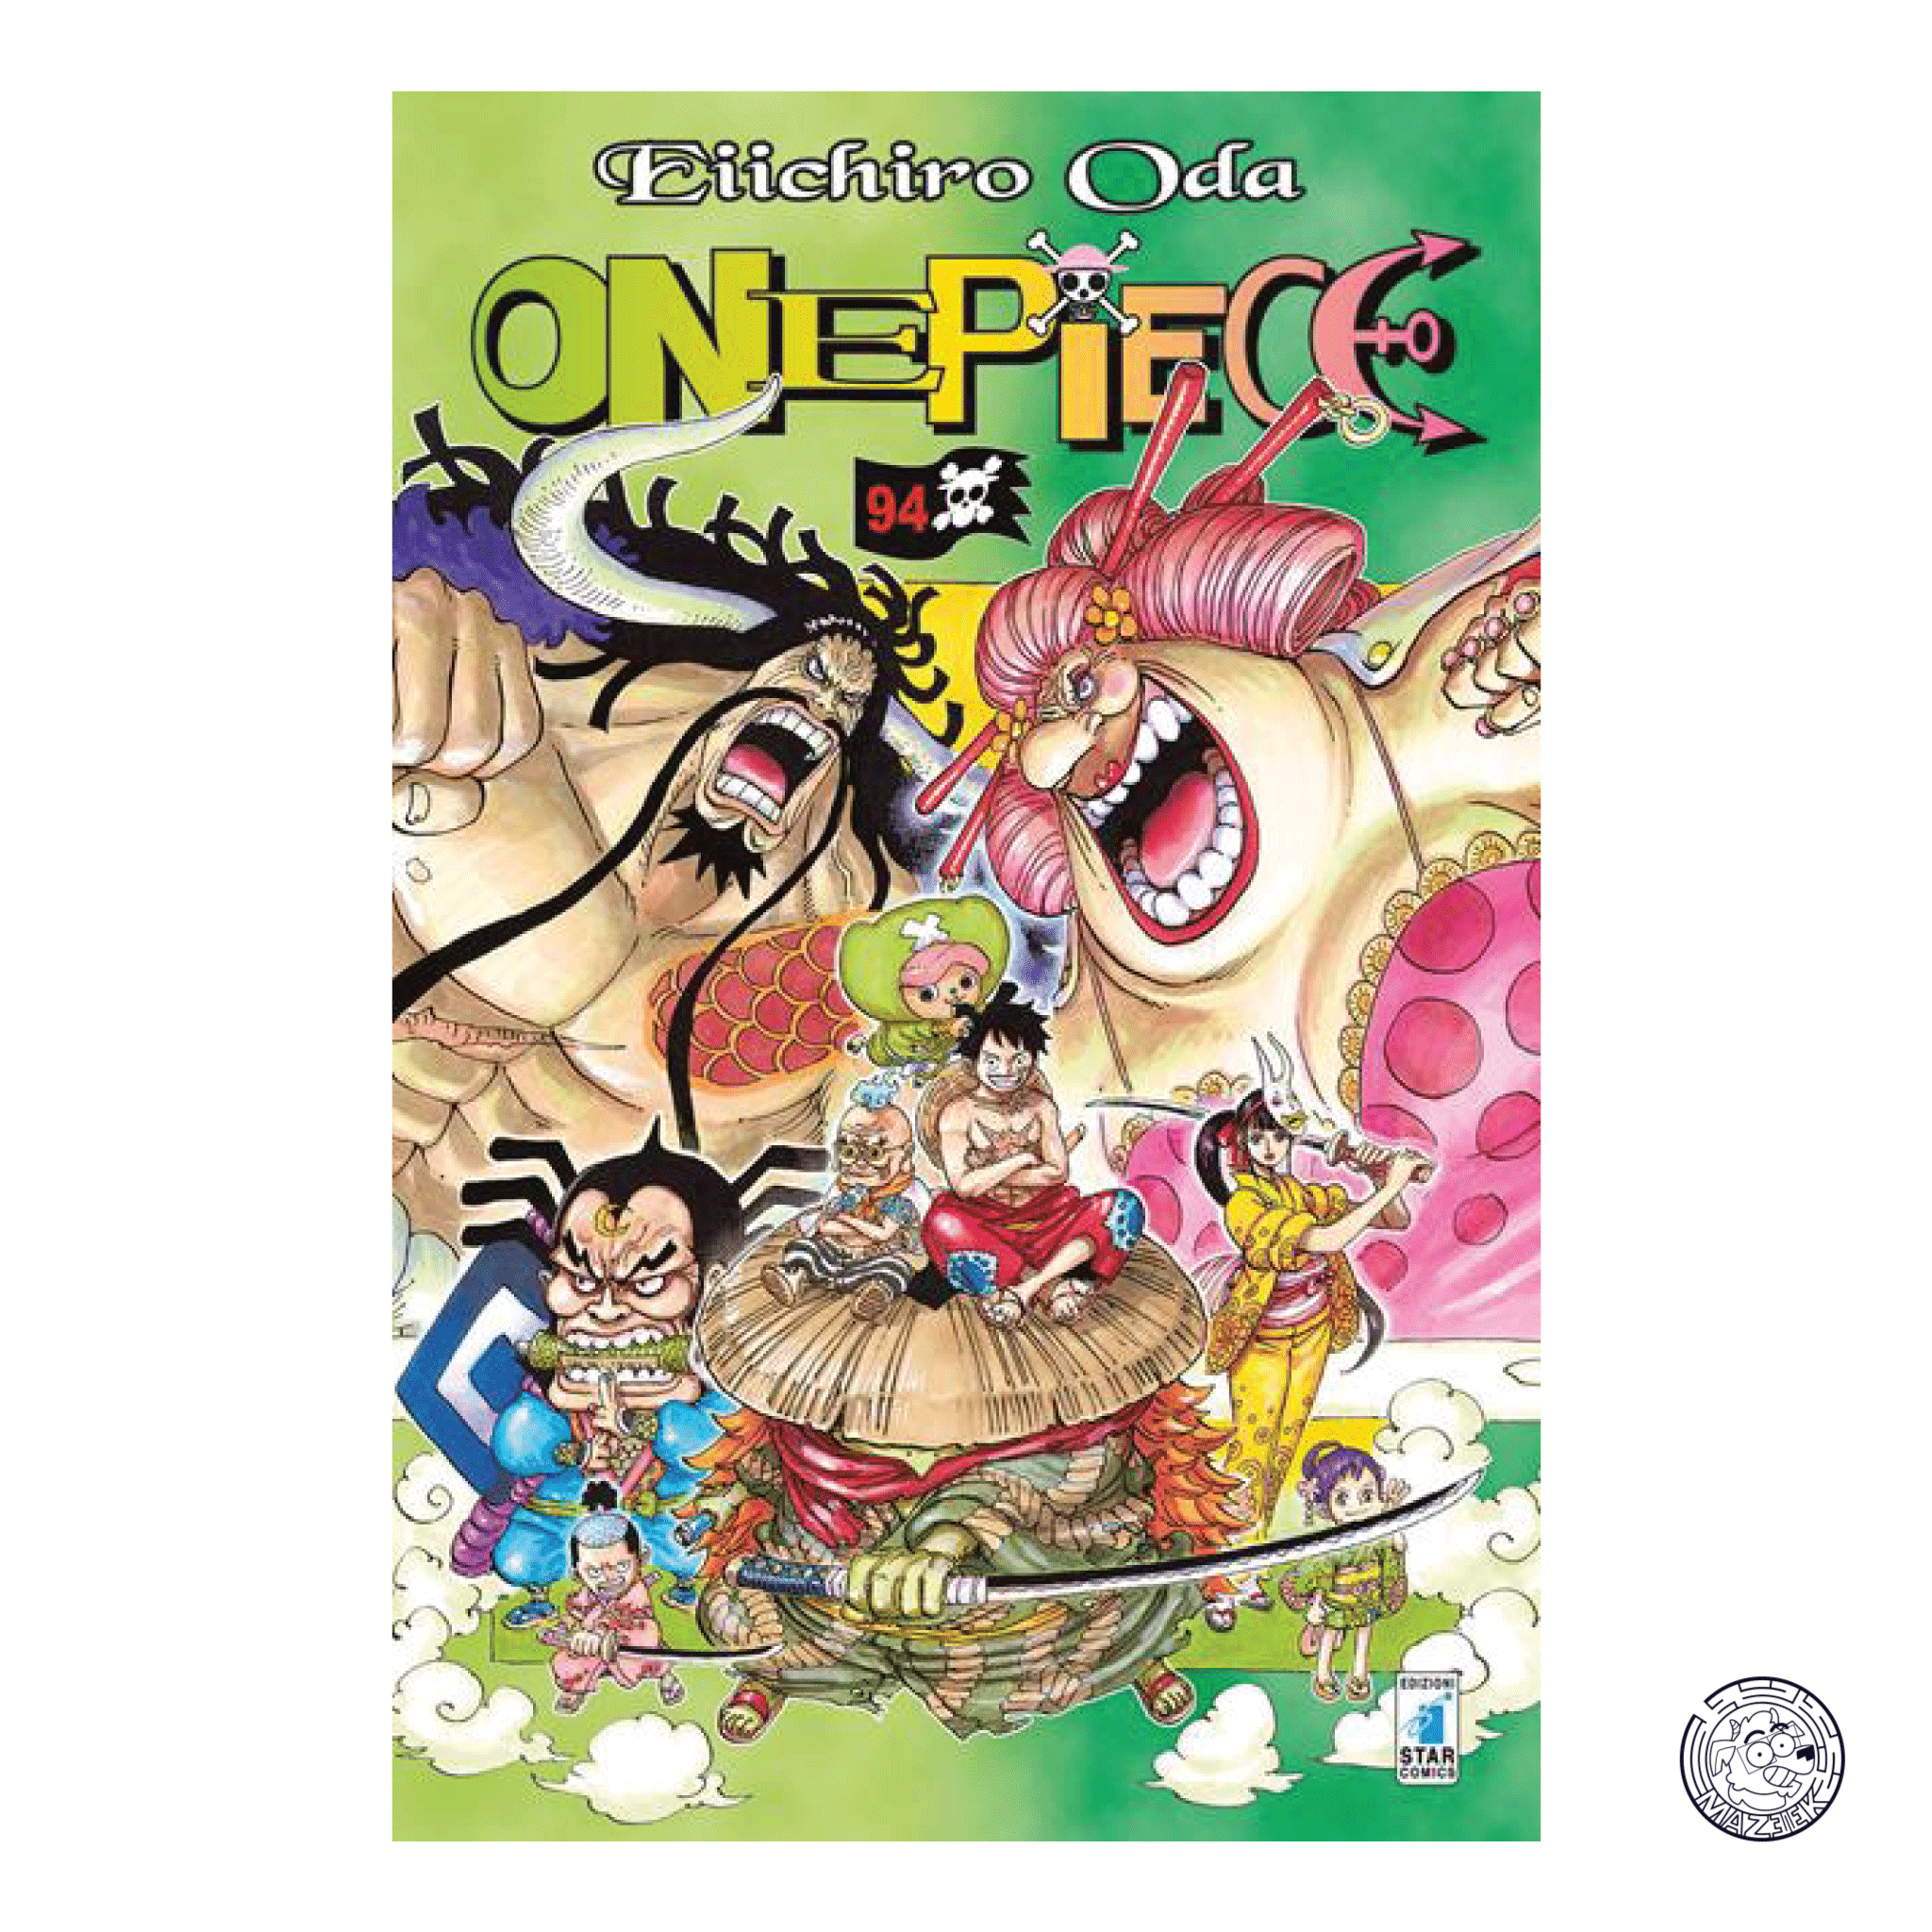 One Piece 94